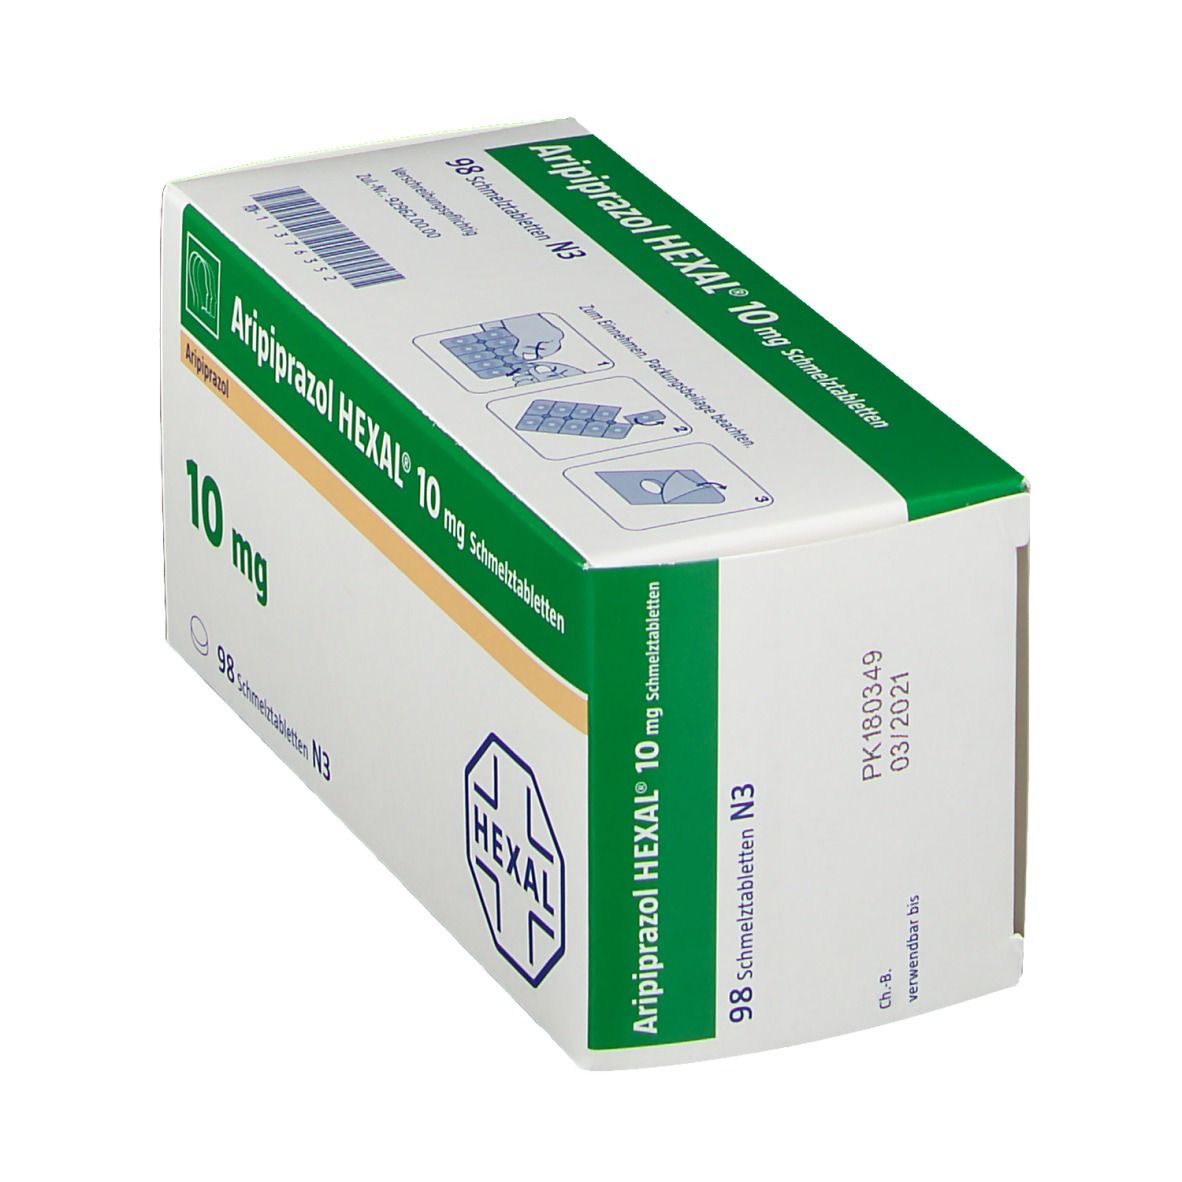  Aripiprazol HEXAL® 10 mg Schmelztabletten